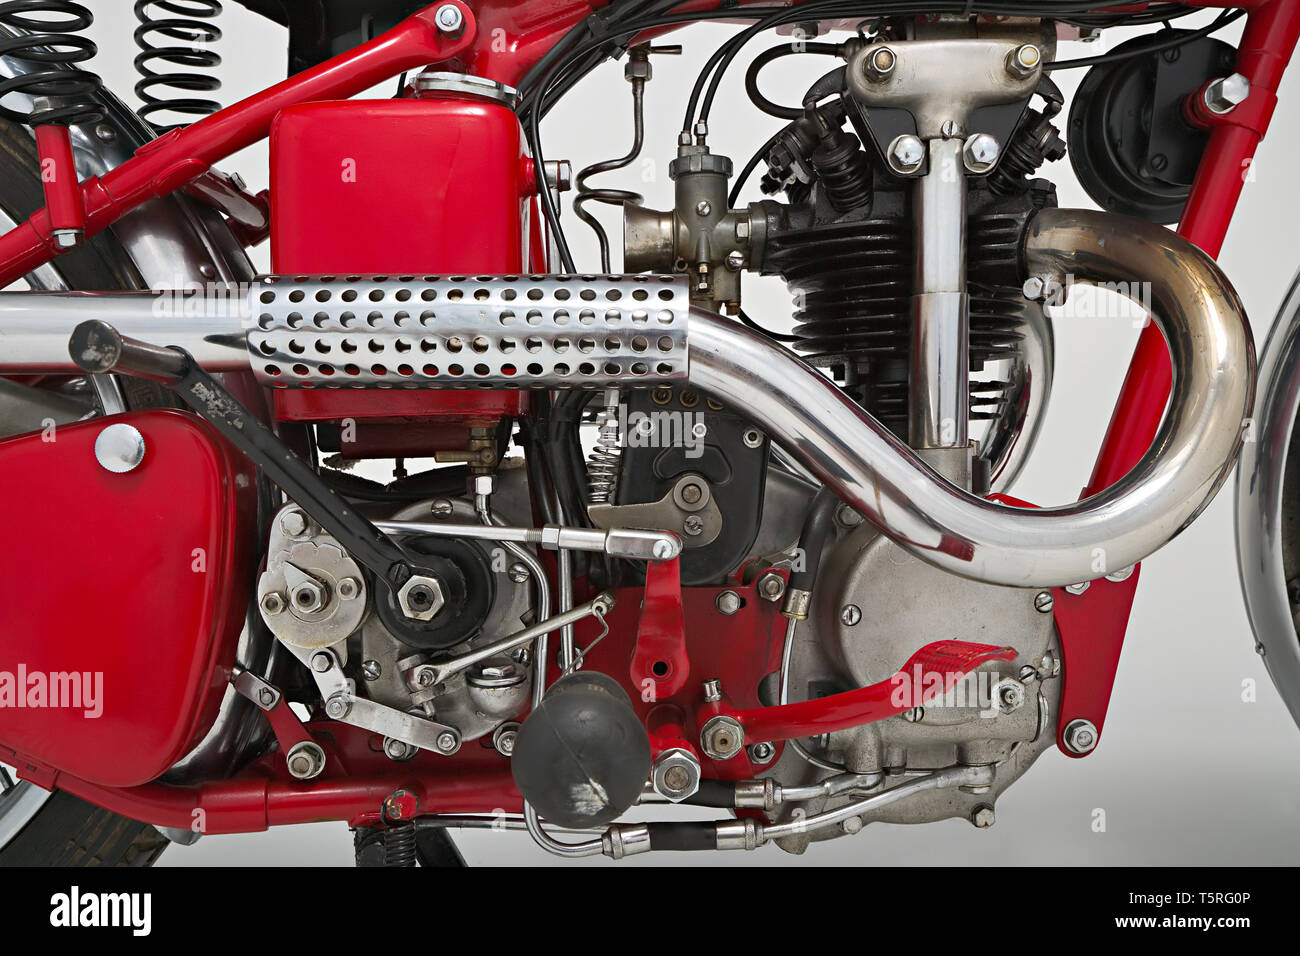 Moto d'Epoca Ganna 250 cc. Motore. Marca: Ganna modello: 250 cc nazione: Italia - Varese anno: 1935 condizioni: restaurata cilindrata: Foto de stock